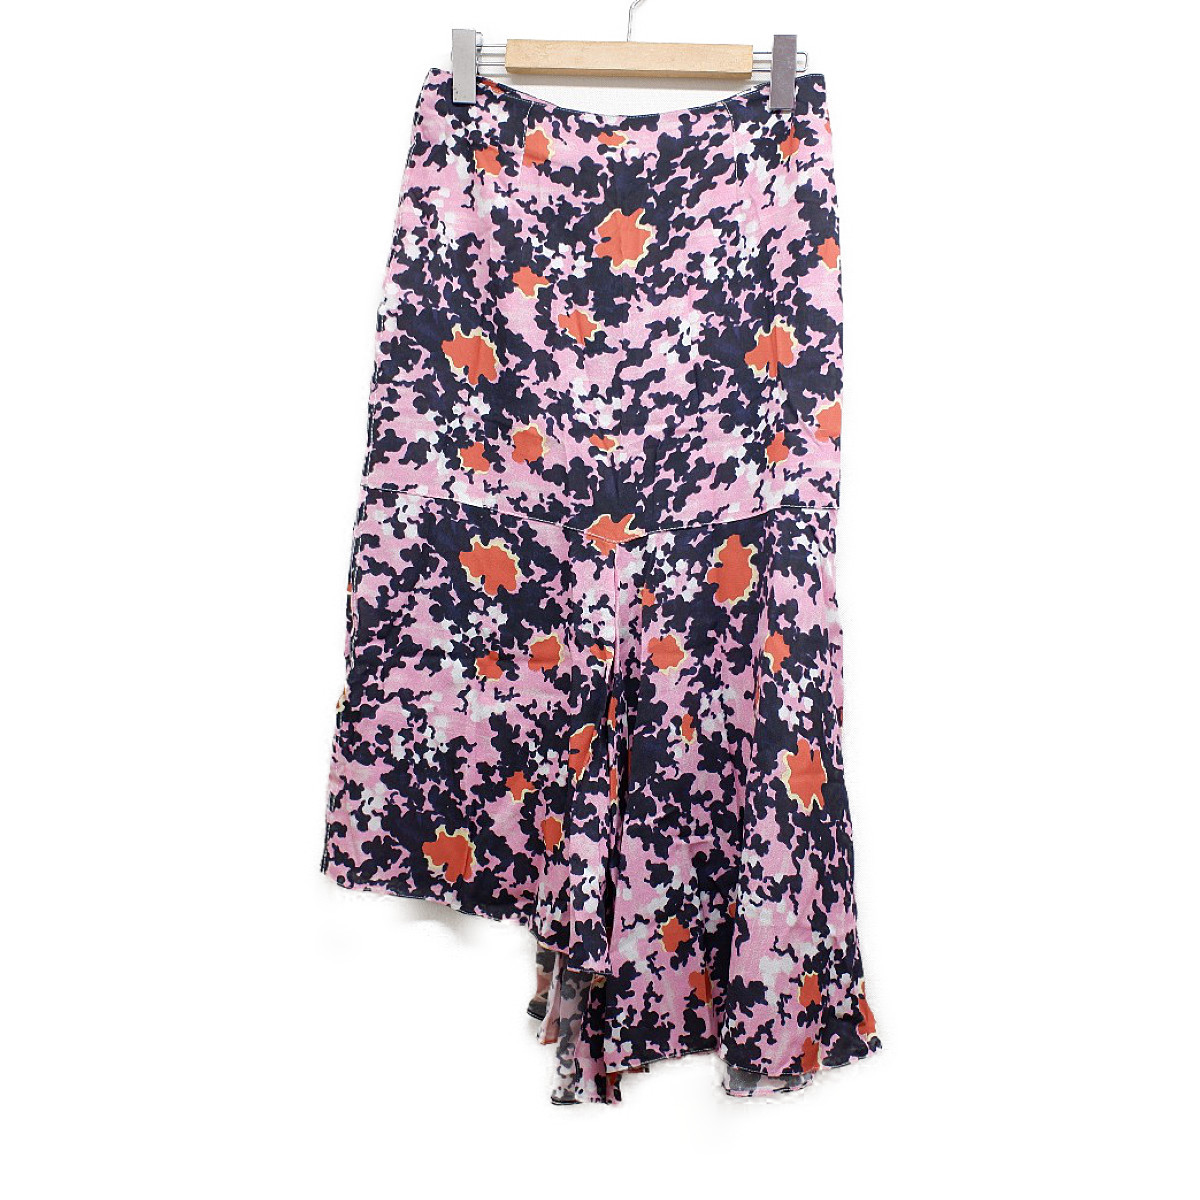 マルニの正規 20年製 総柄 ピンク GOMA0187A1 スカートの買取実績です。